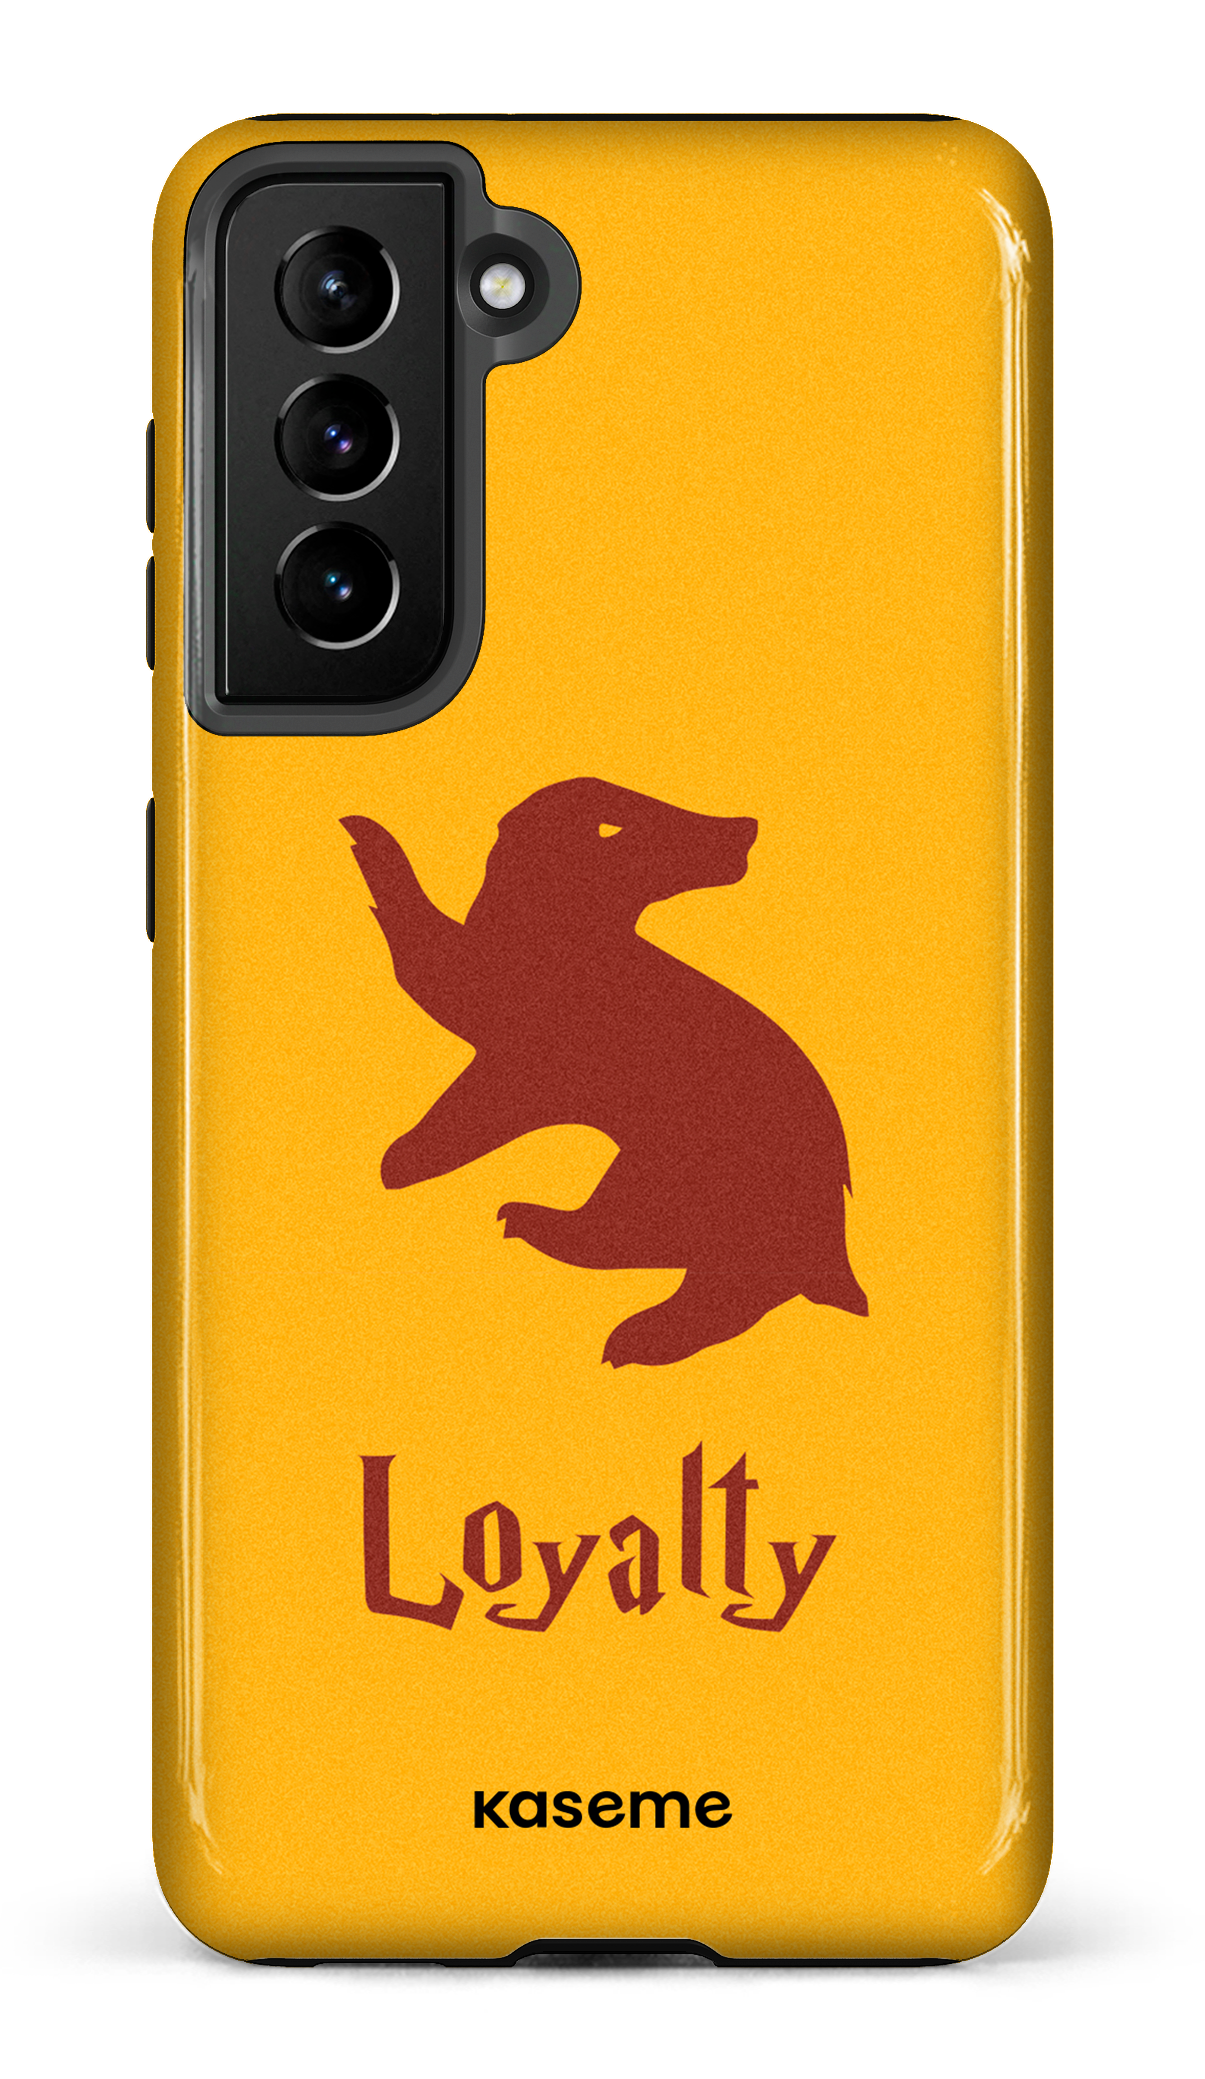 Loyalty - Galaxy S21